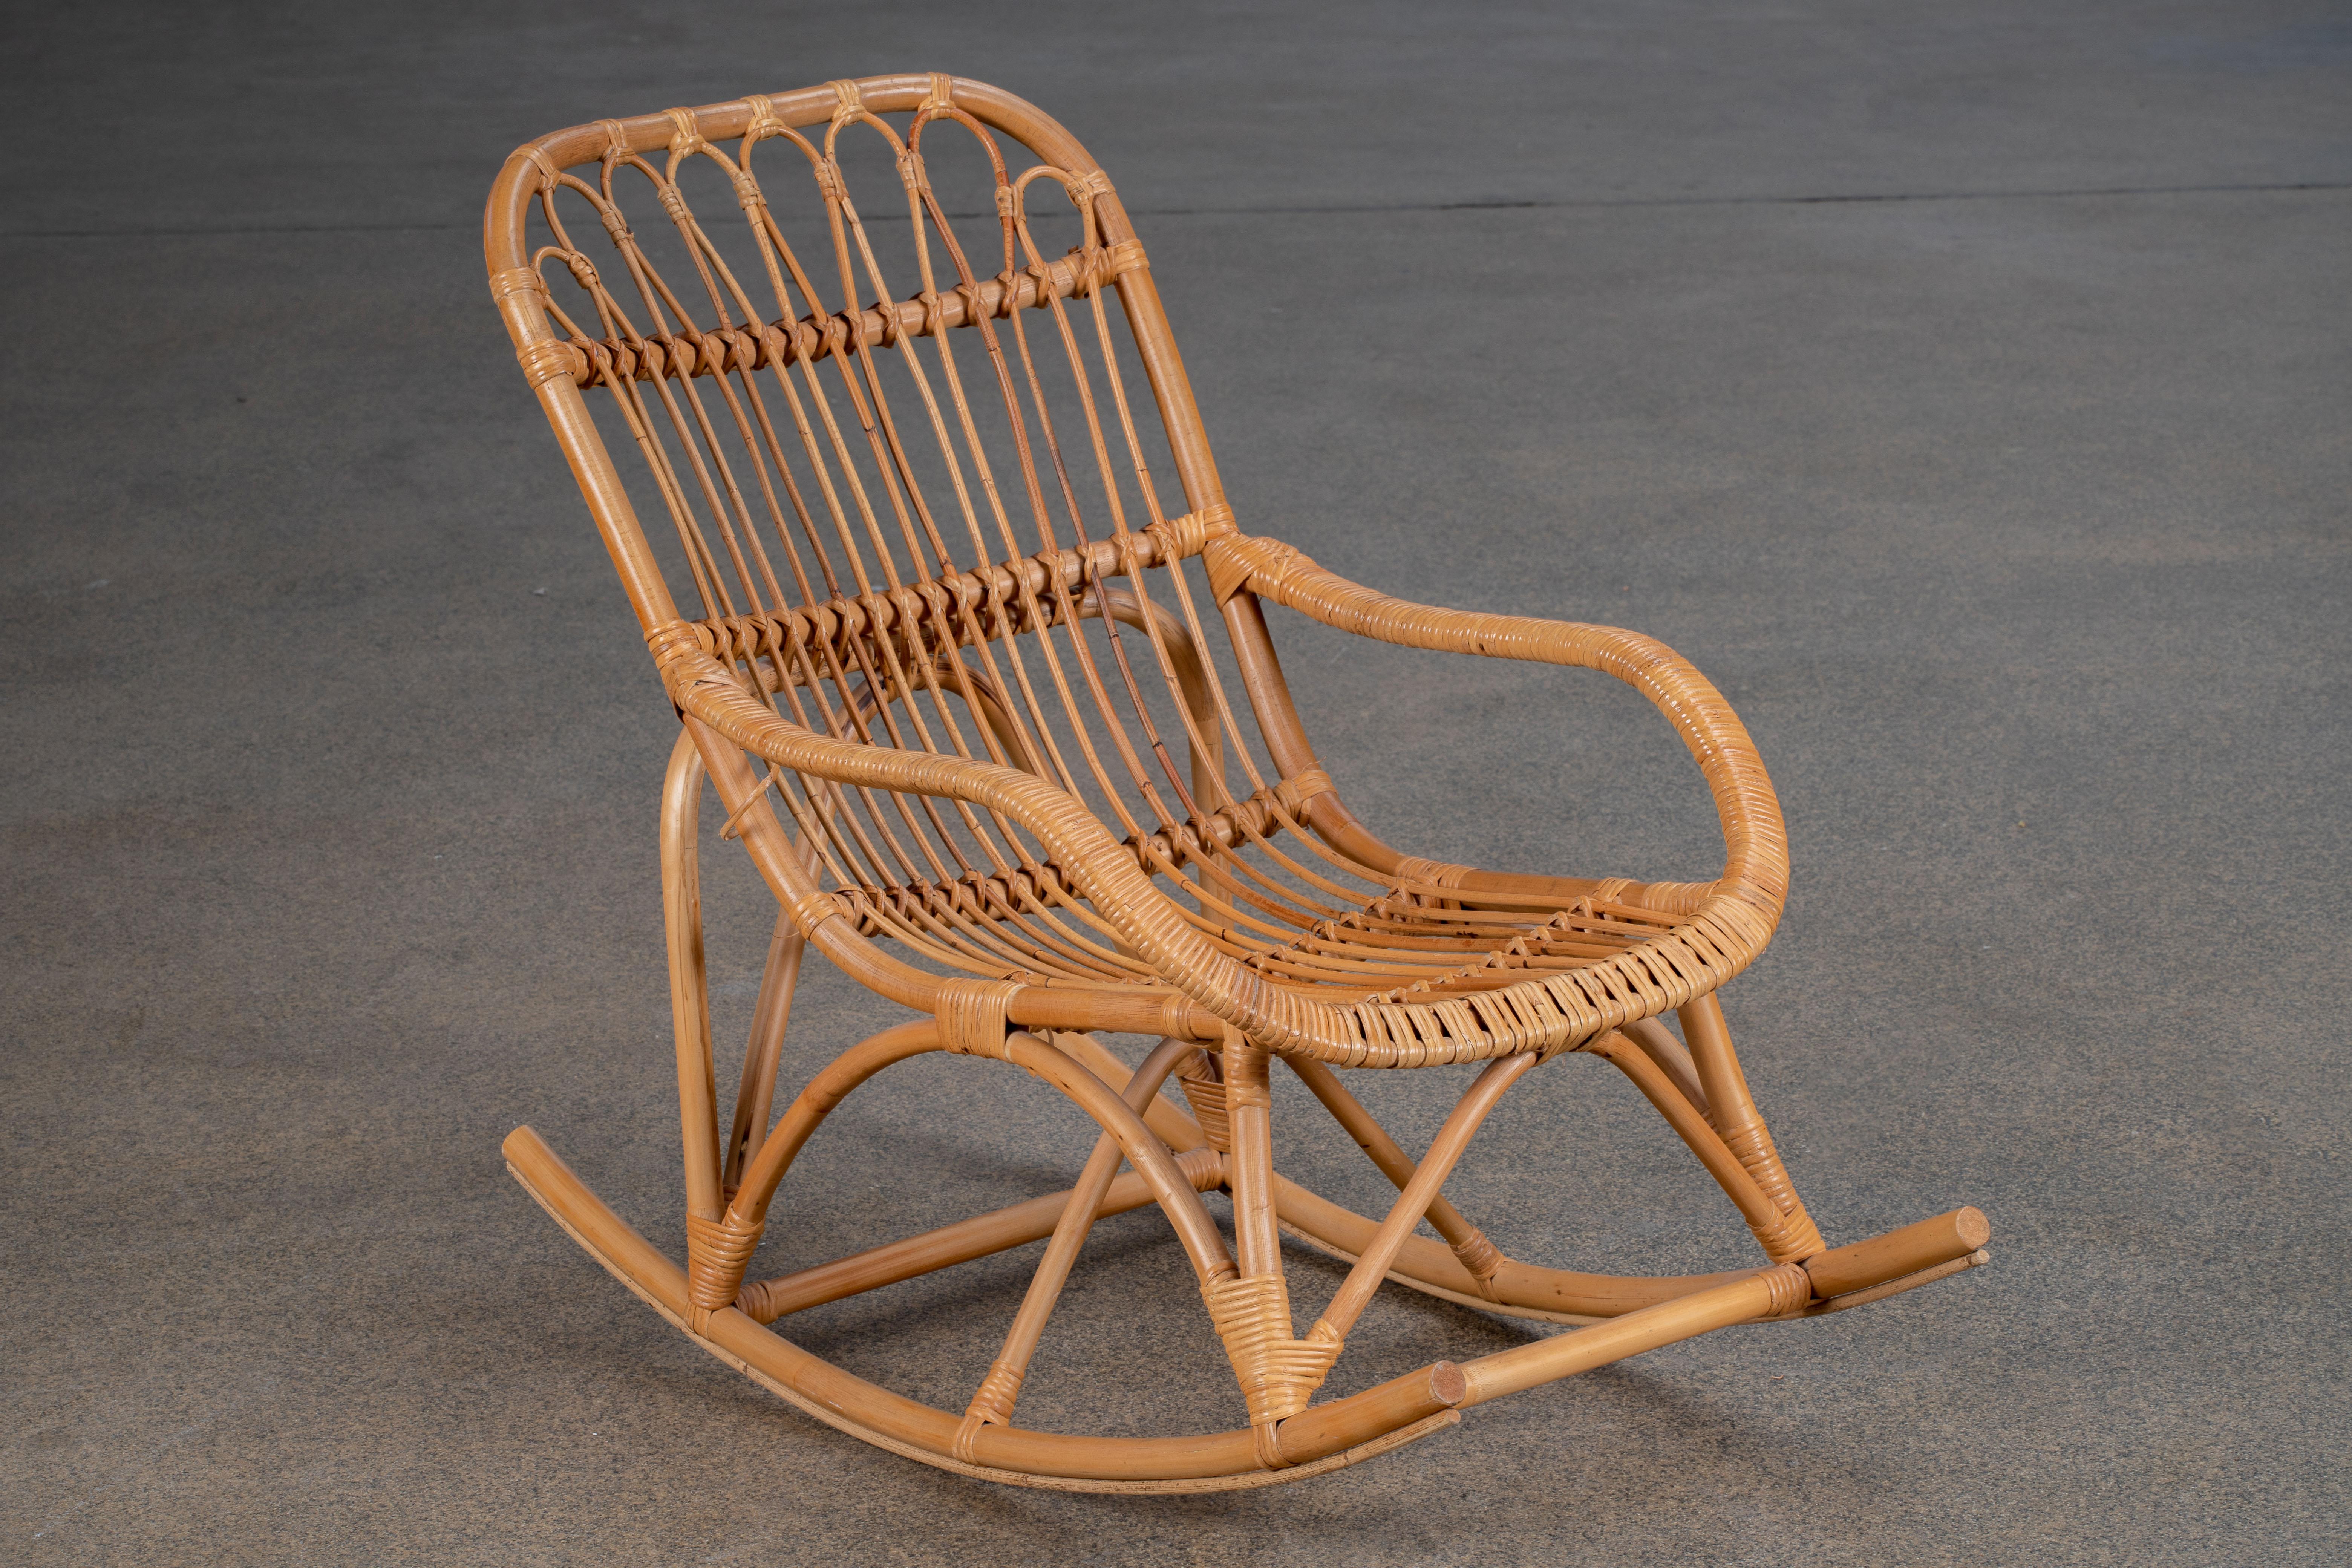 Chaises à bascule surdimensionnées en bambou et rotin des années 1960 Fabriquées à la main sur la Côte d'Azur dans un style moderne et organique. Les chaises sont dotées d'un grand cadre en rotin courbé. Très confortable, avec une excellente